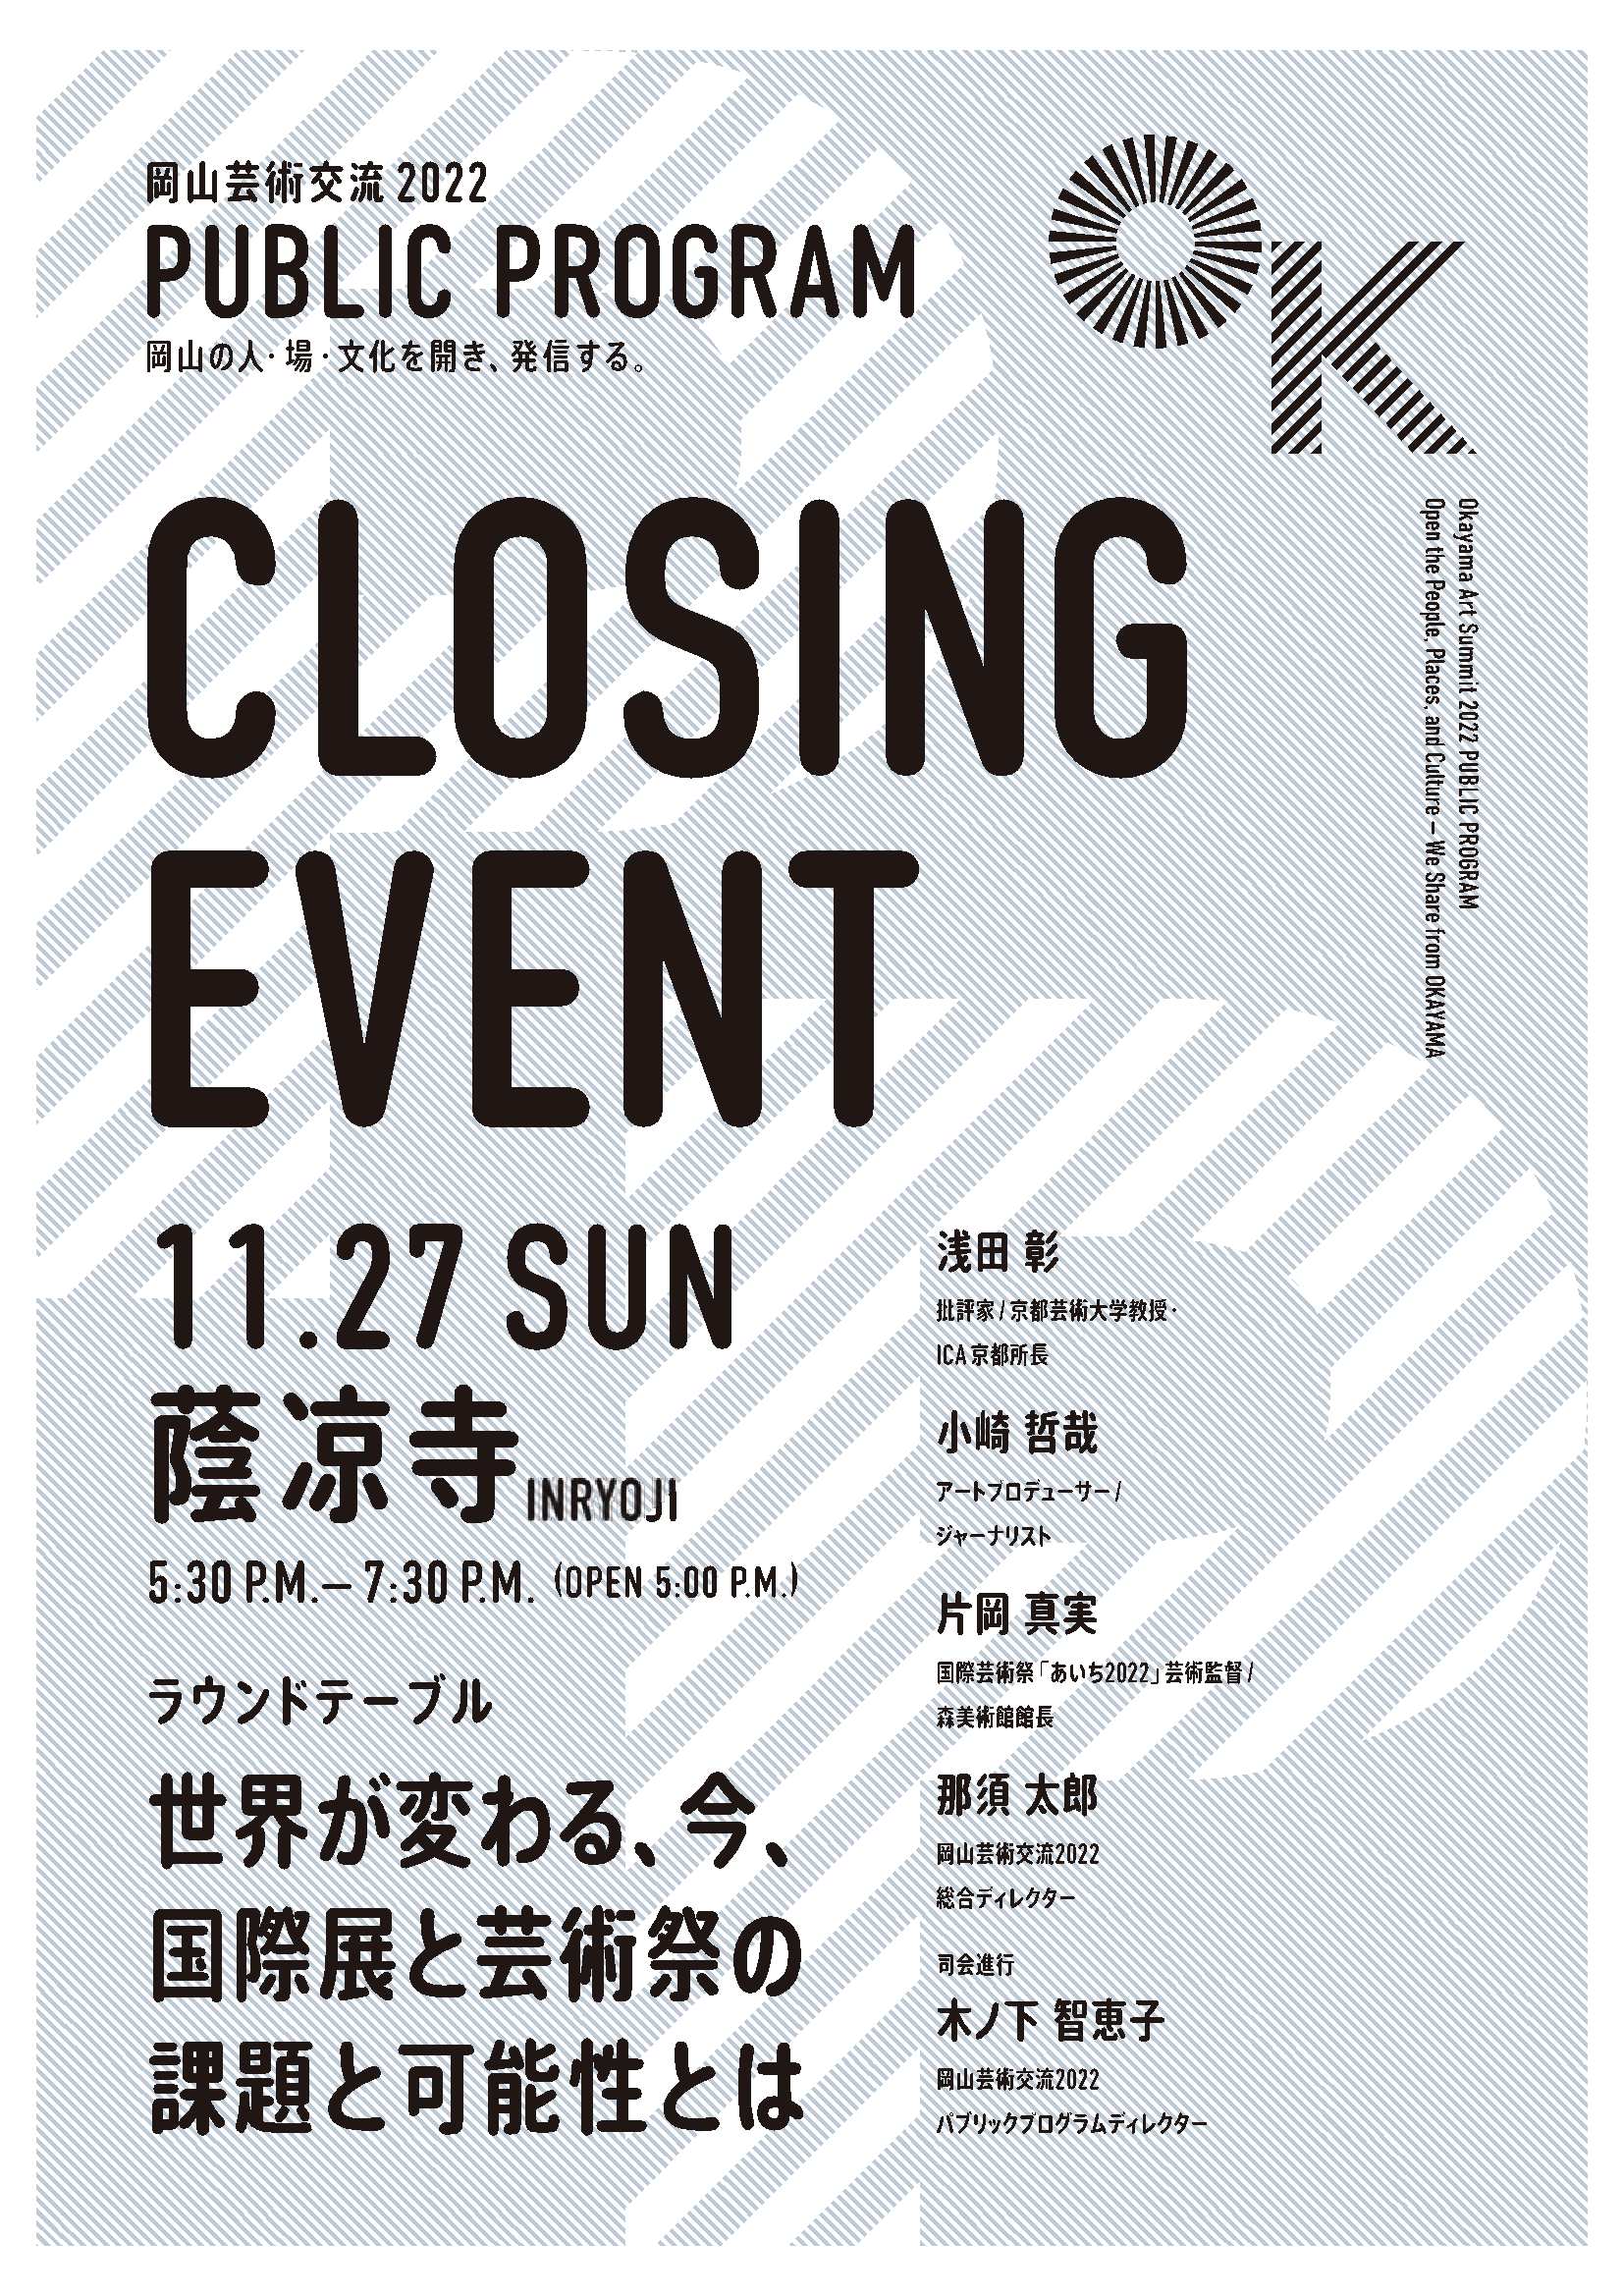 【終了しました】岡山芸術交流クロージングイベントの参加者を募集します